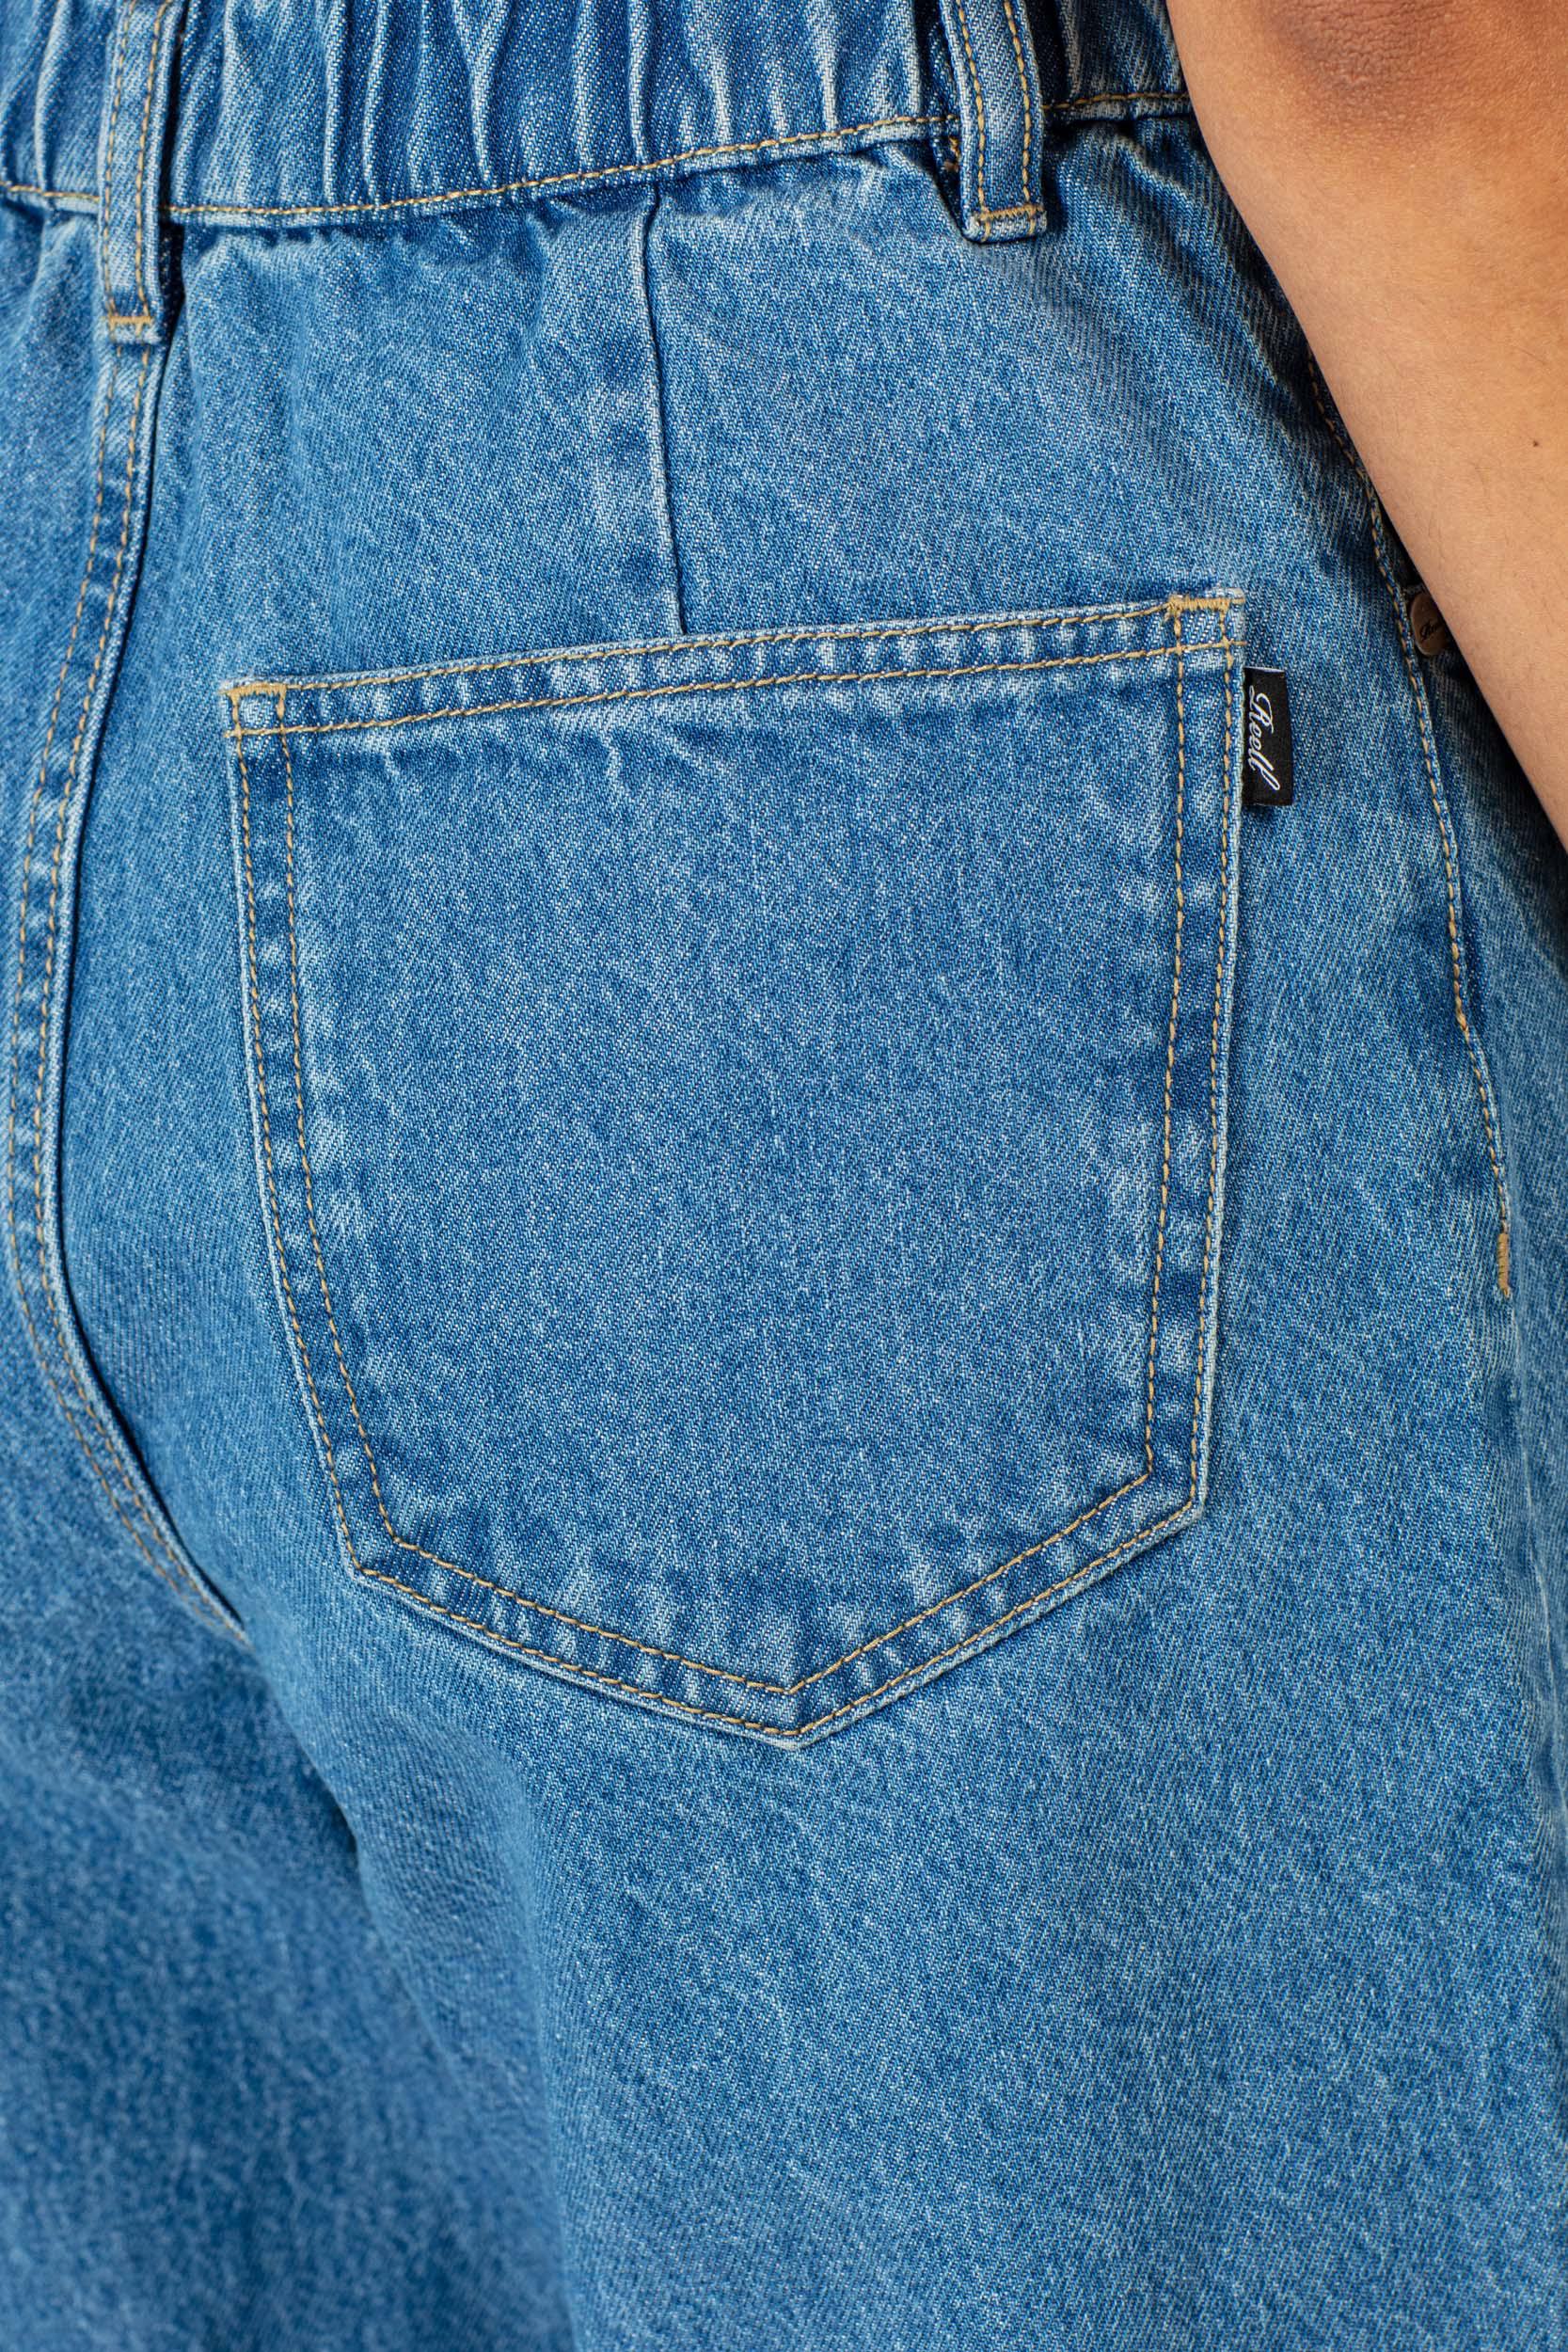 Reell Women Sky Jeans (Farbe: Origin Mid Blue / Größe: 27)